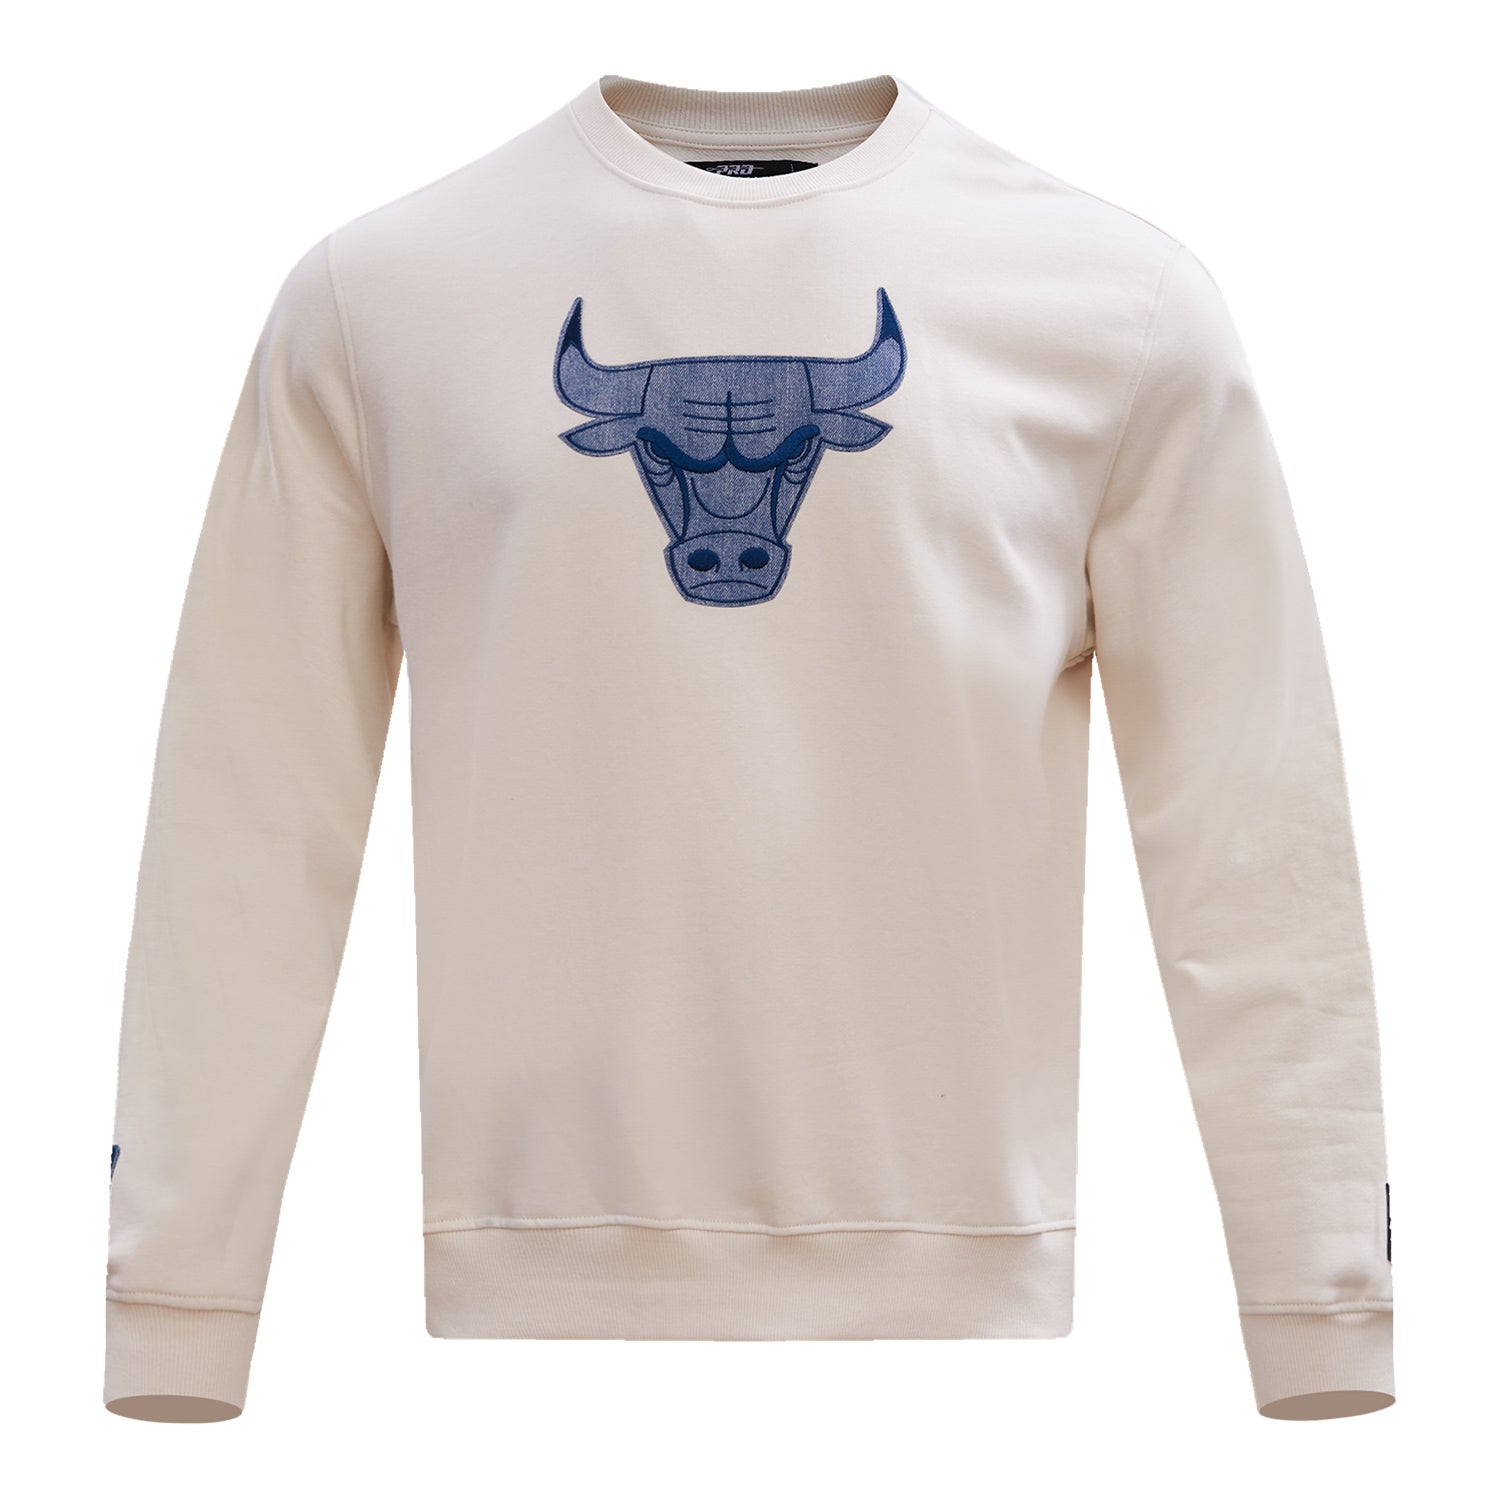 Bulls Hoodie – The Restaurant Fashion Bistro